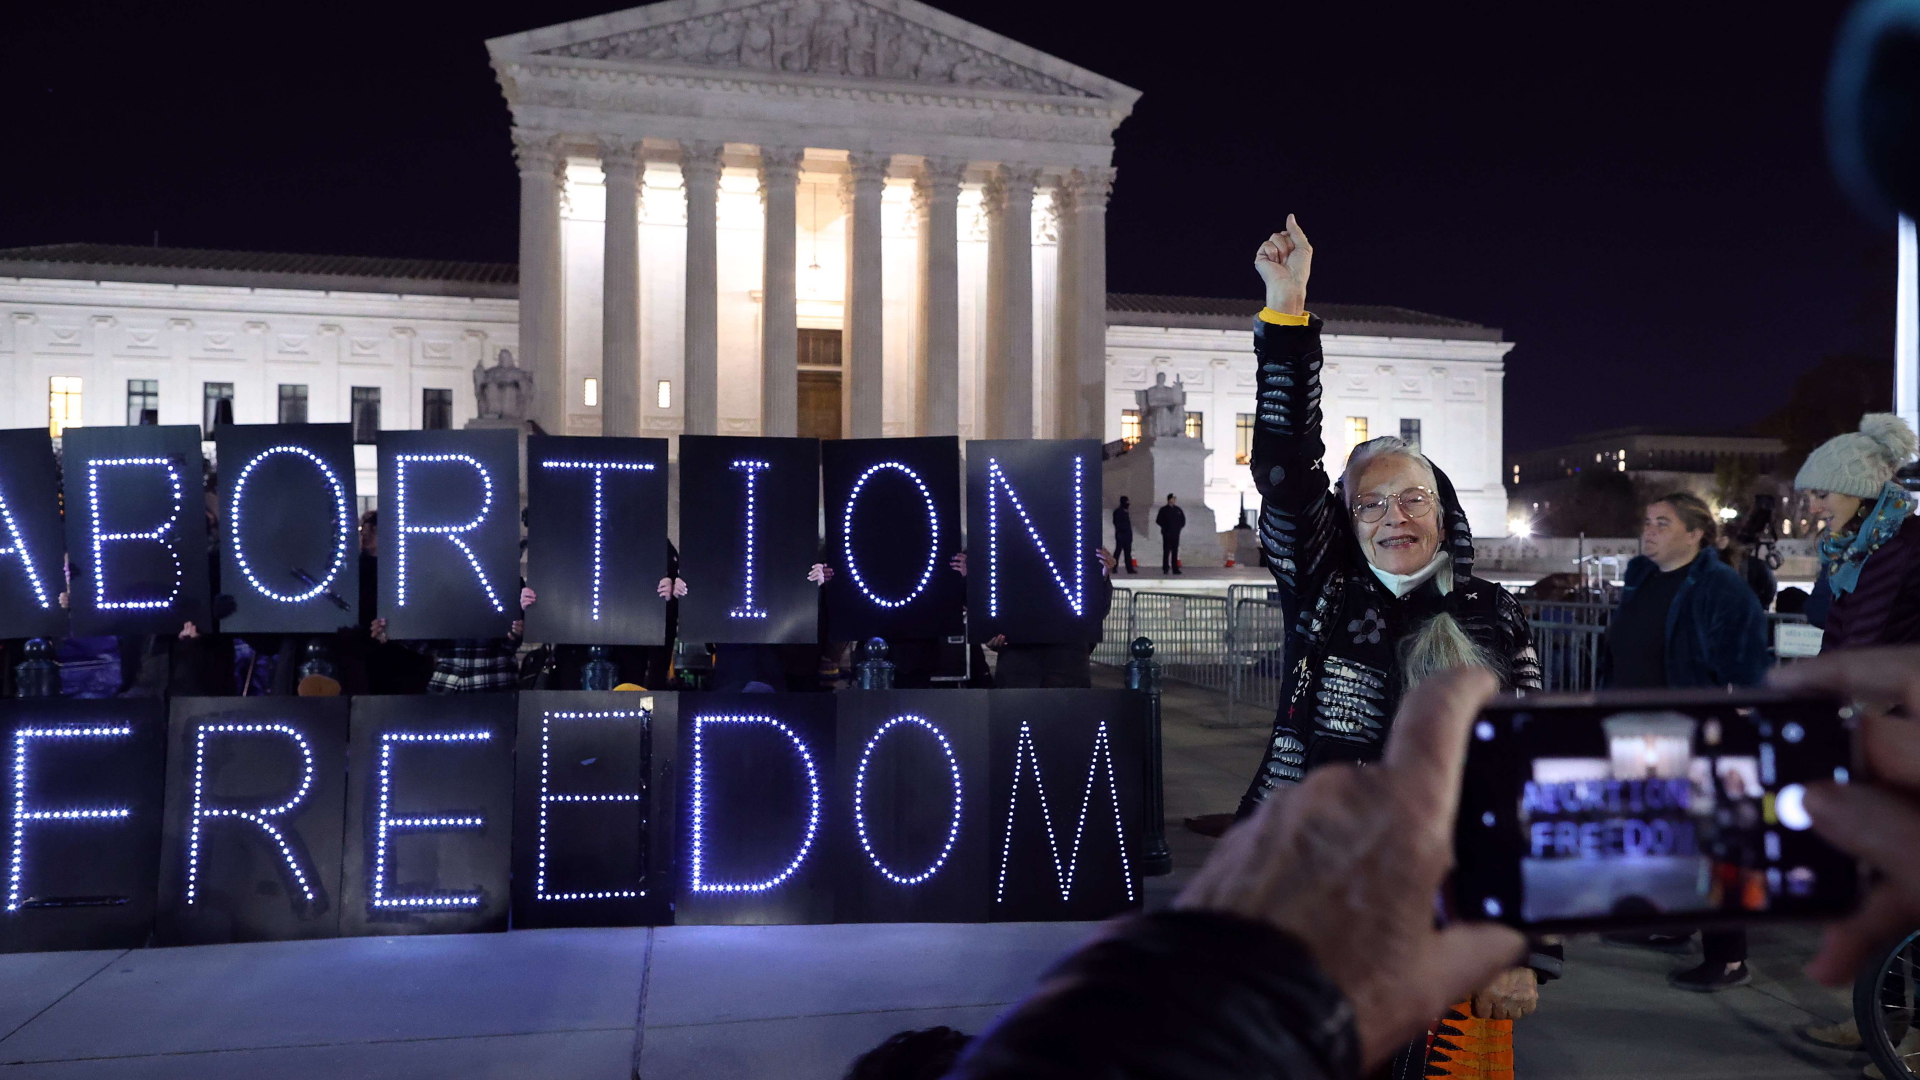 Befürworterdes liberalen Abtreibungsrechts demonstrieren vor dem Supreme Court in Washington. | AFP